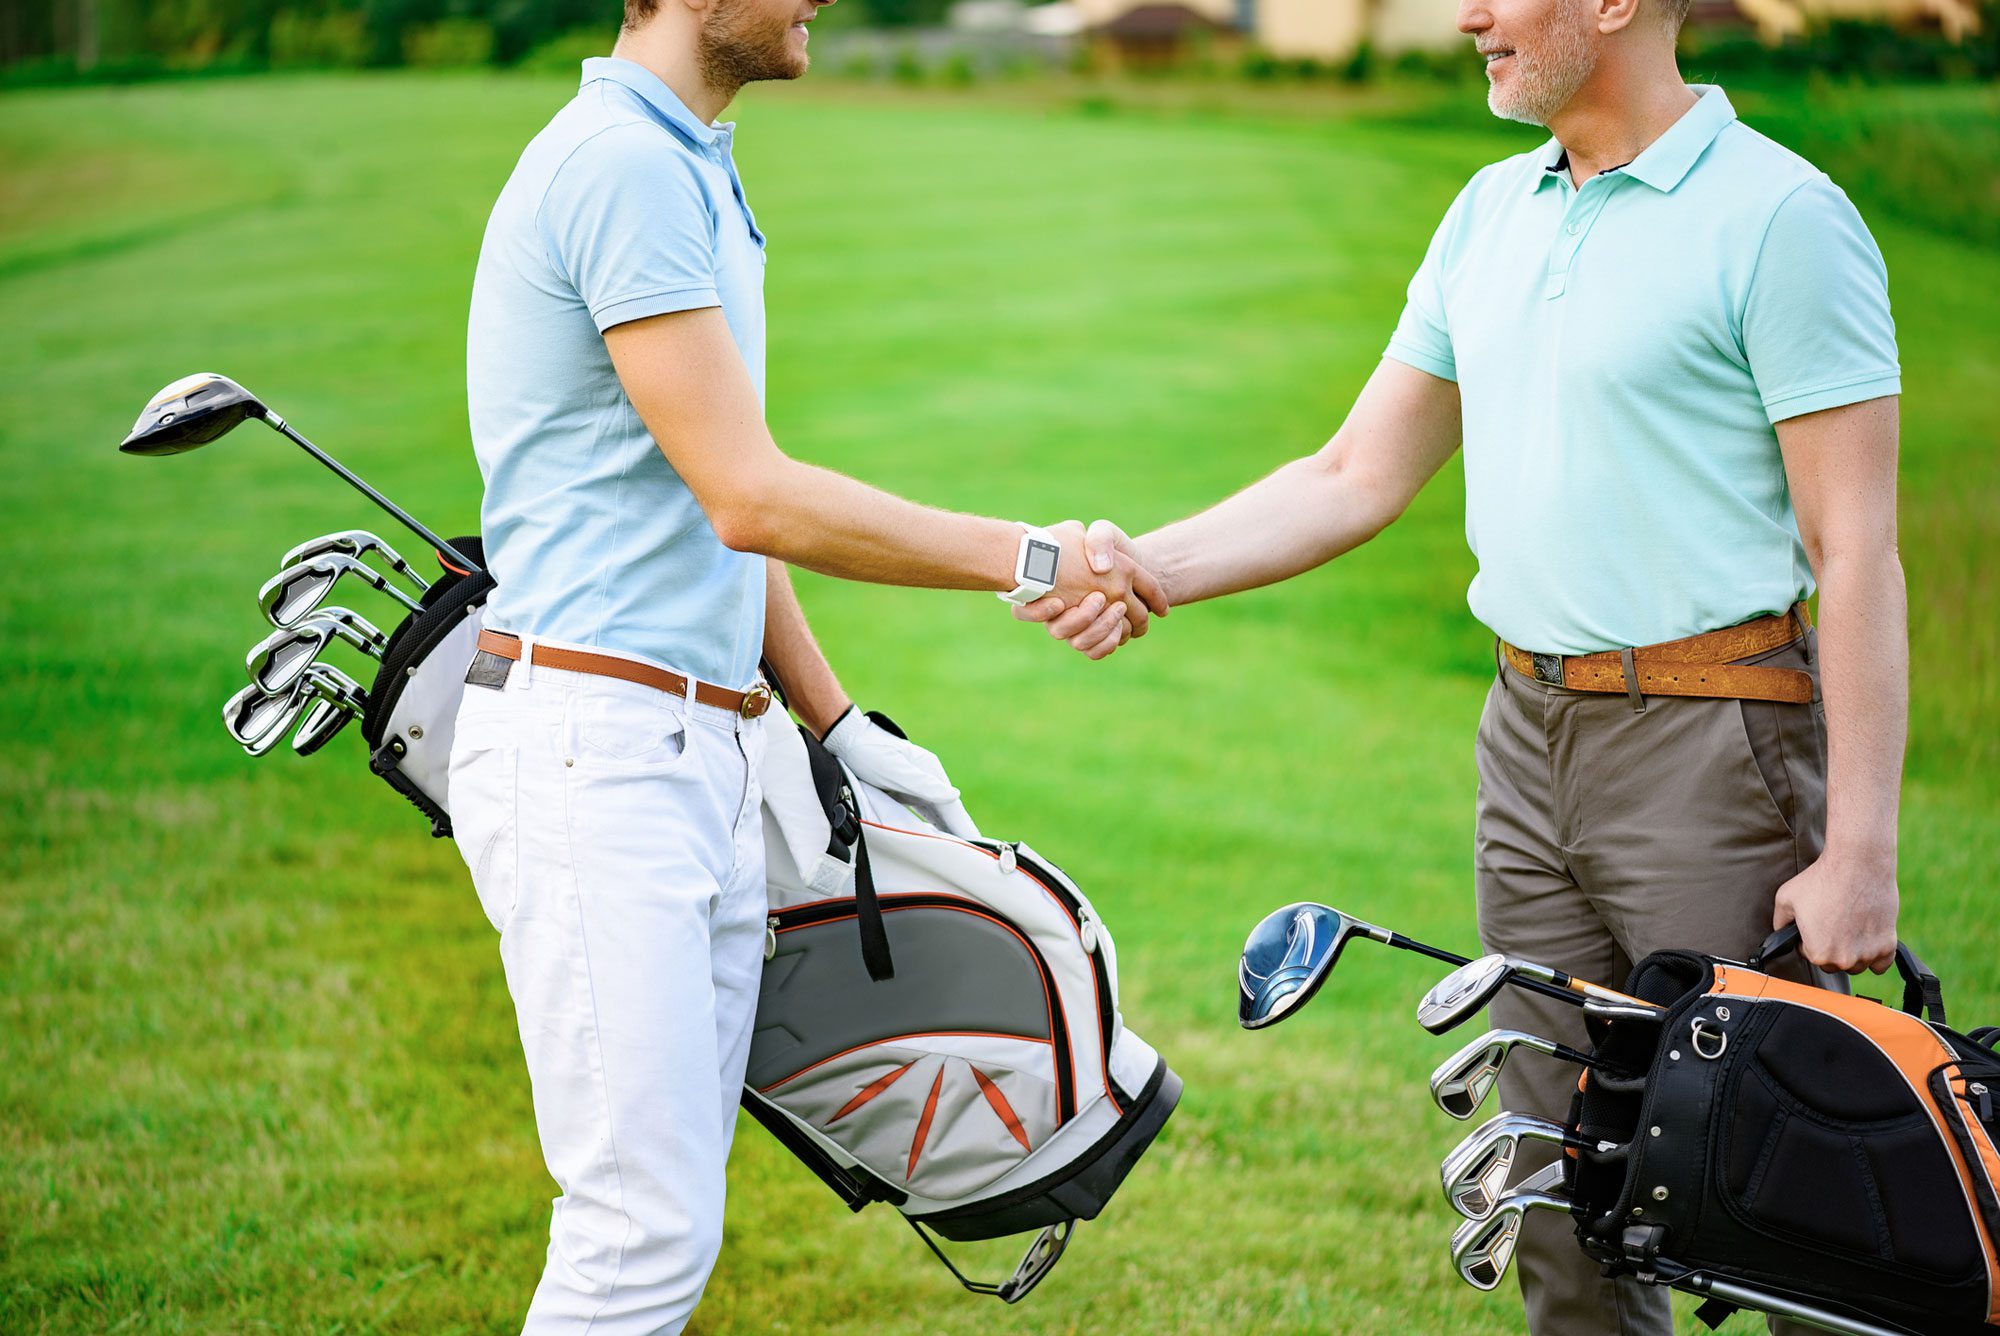 Golf handshake